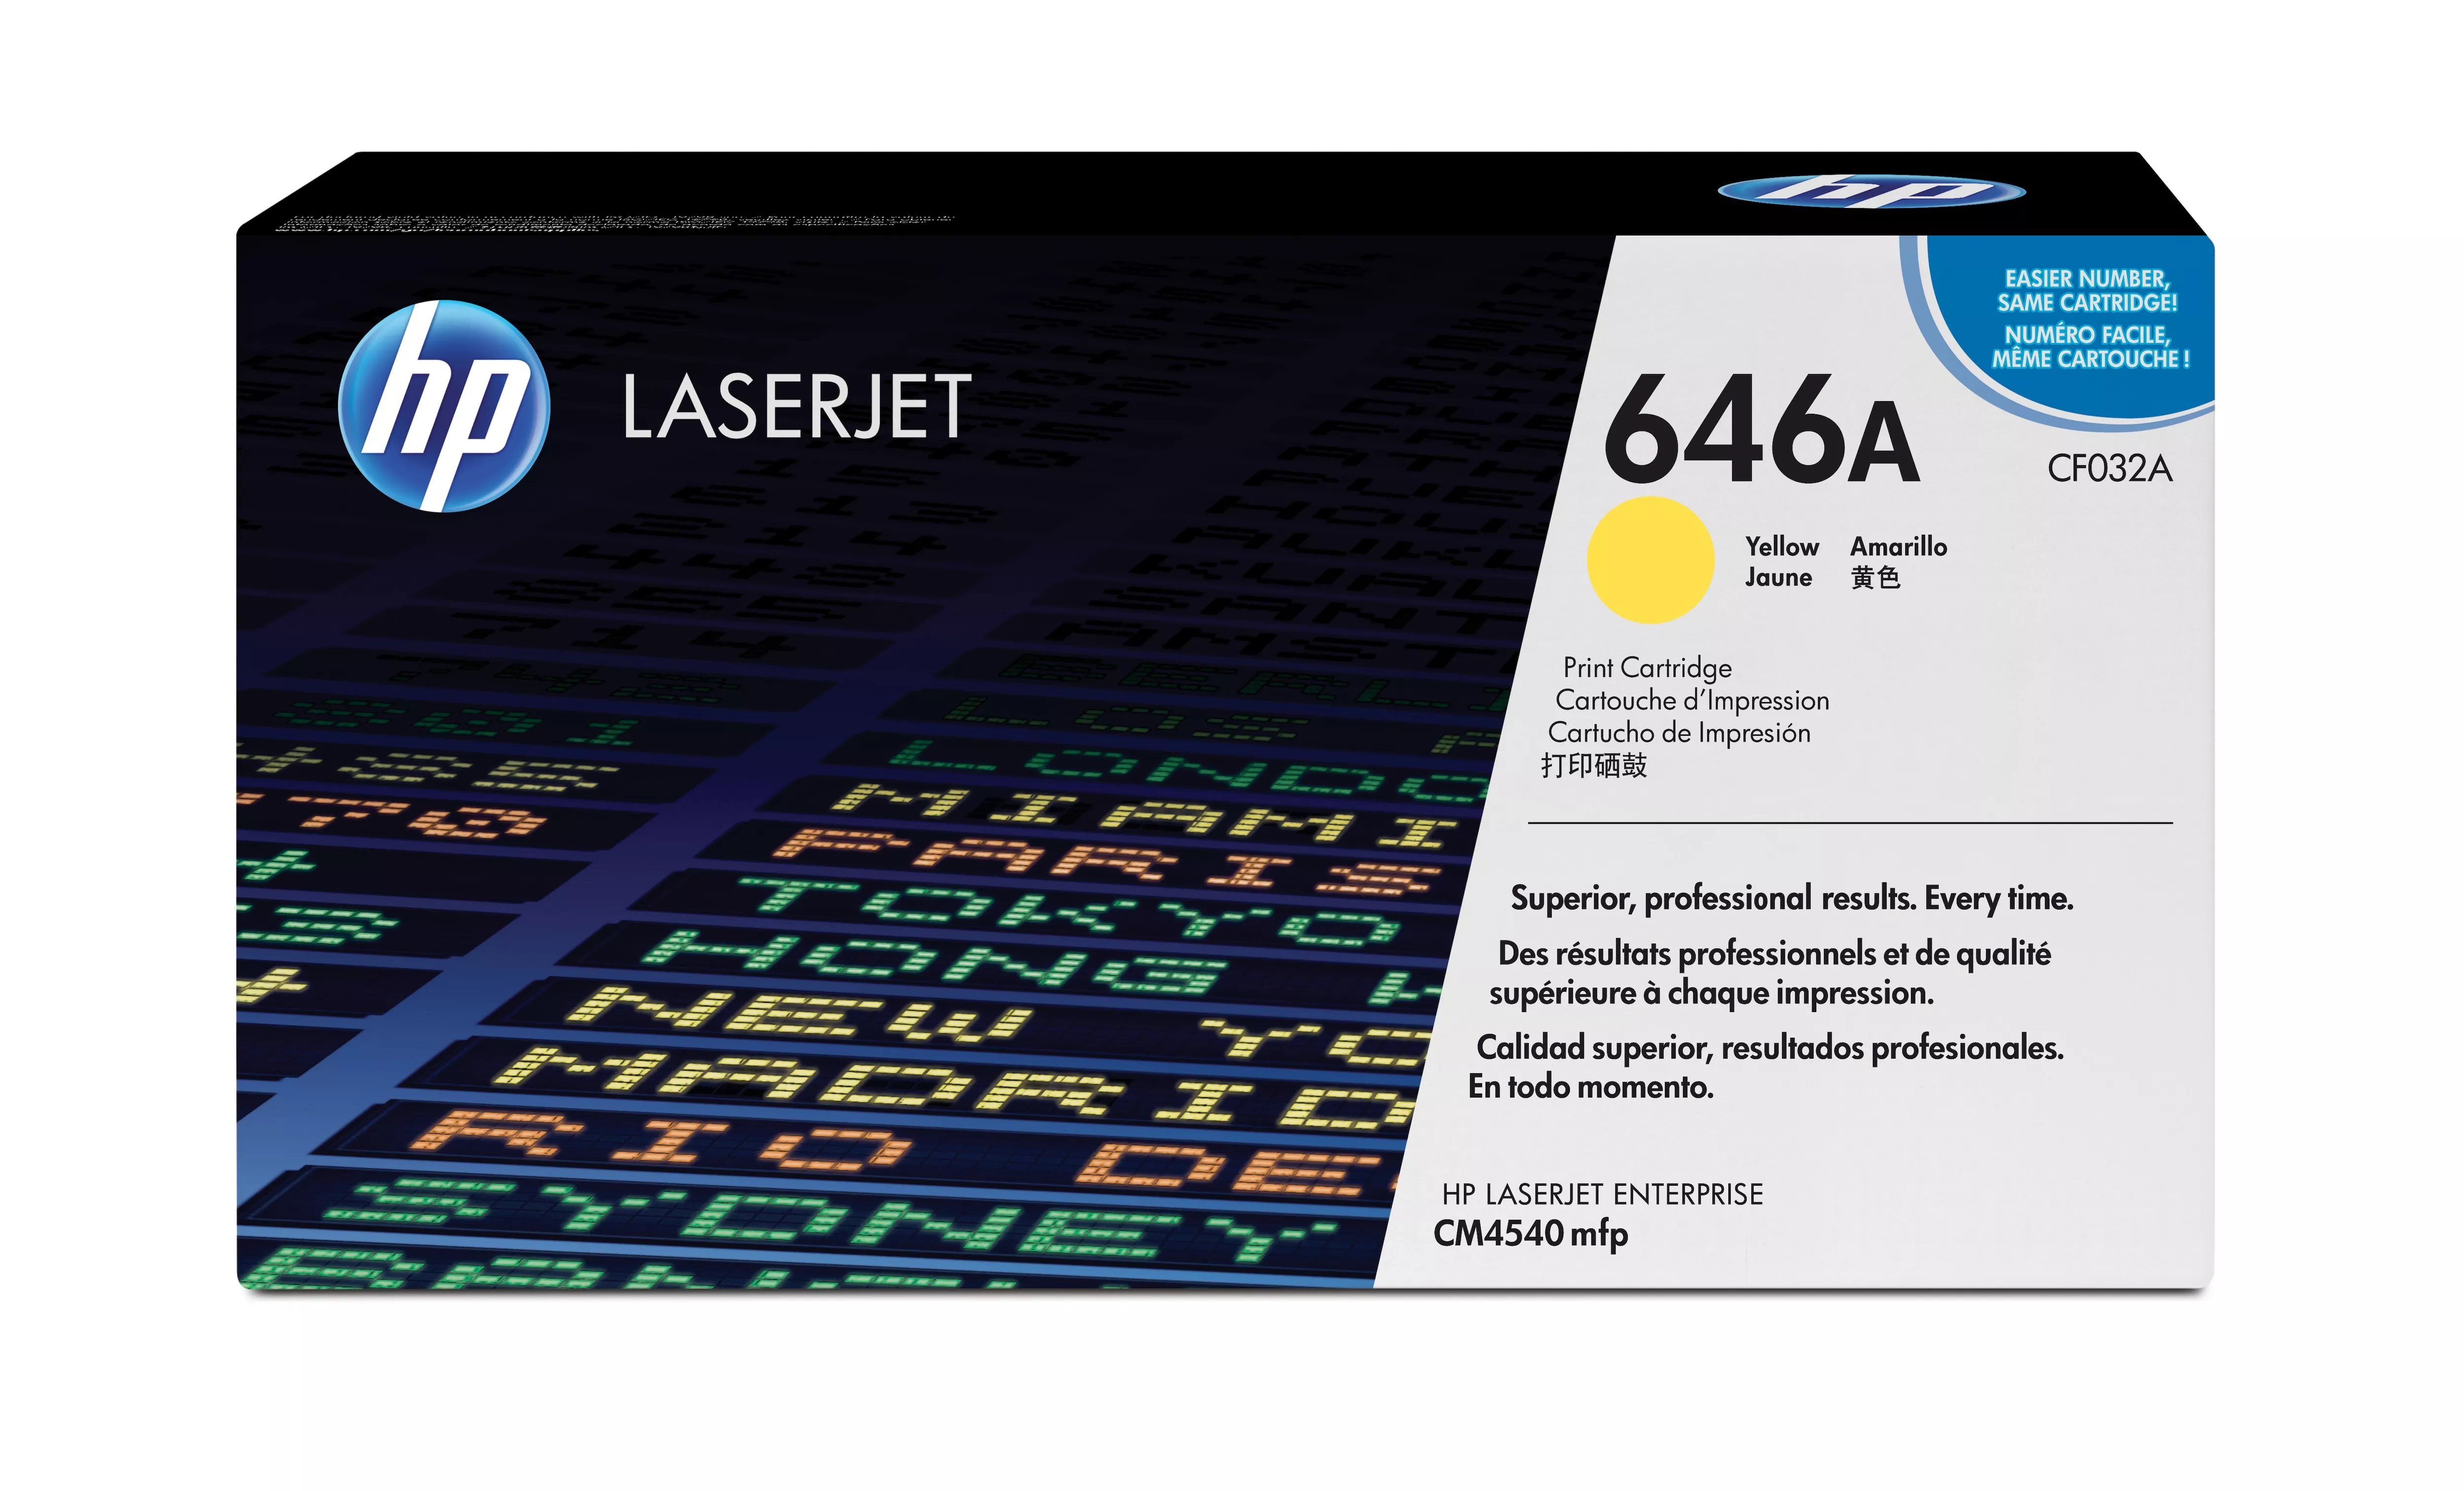 Achat HP original Colour LaserJet CF032A Toner cartridge yellow au meilleur prix